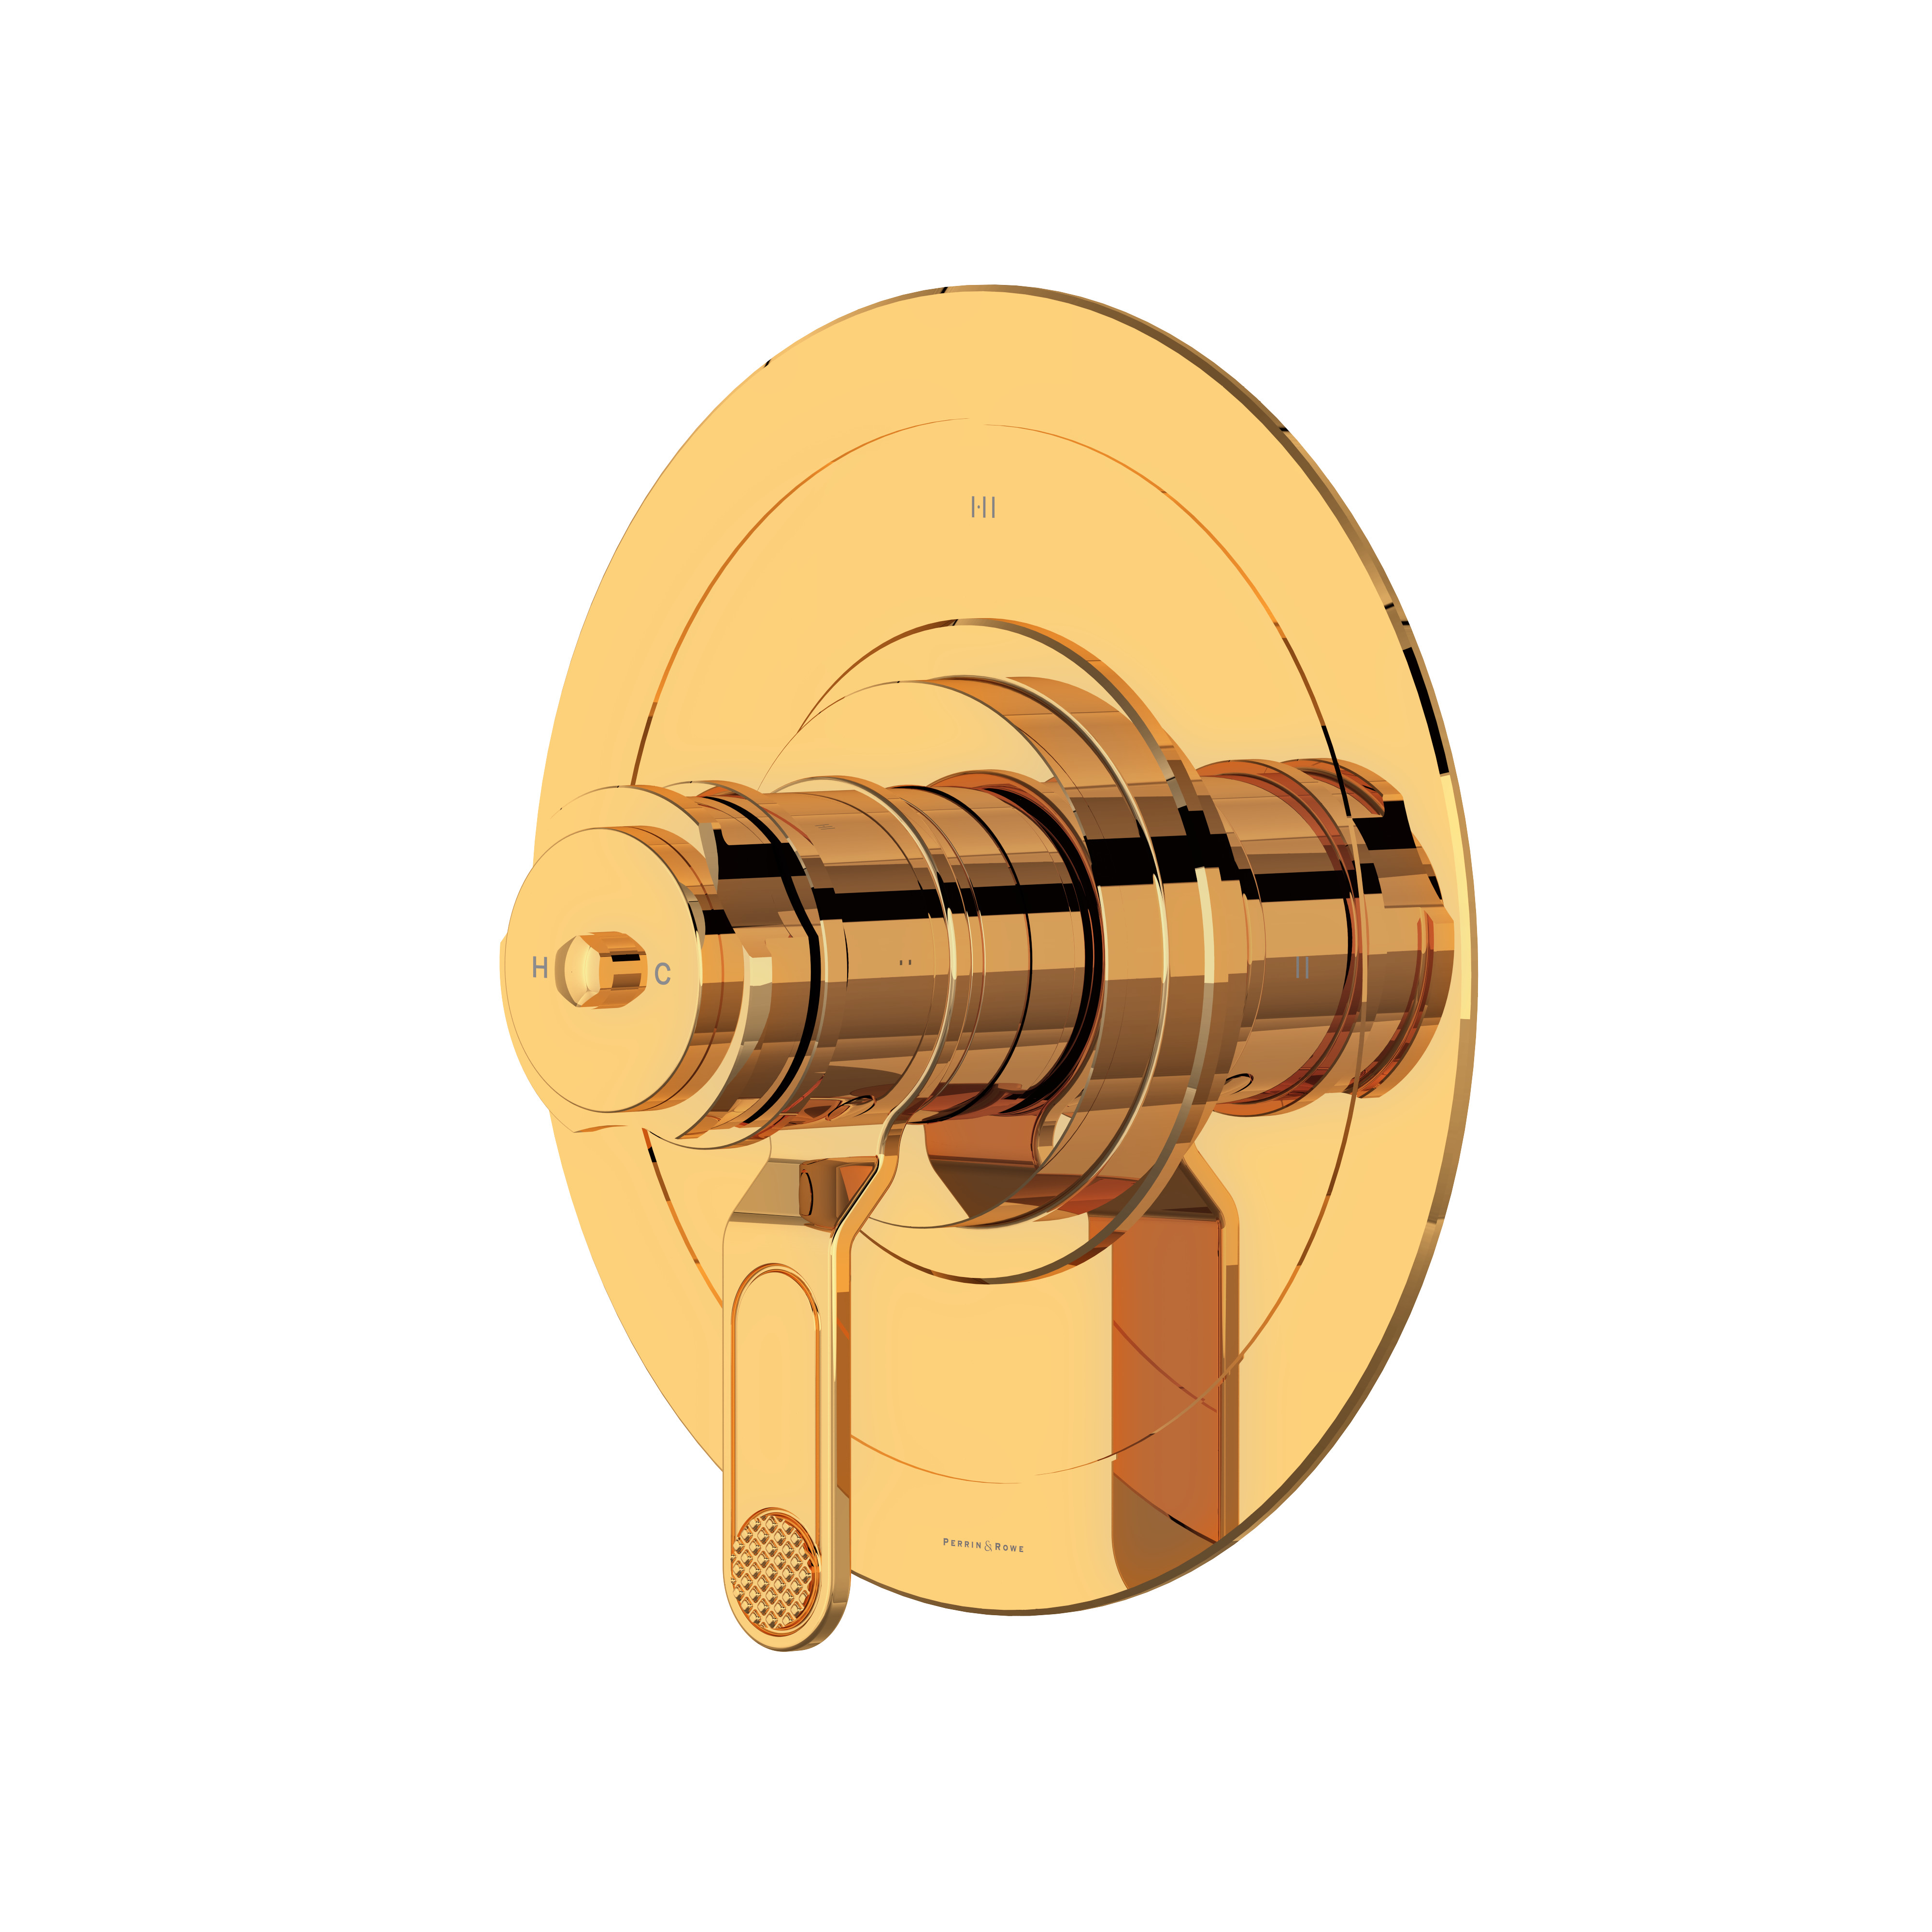 Garniture pour valve pression équilibrée et thermostatique de 1/2 po à 3 fonctions Armstrong - Or anglais | Numéro de modèle: U.TAR23W1DWEG